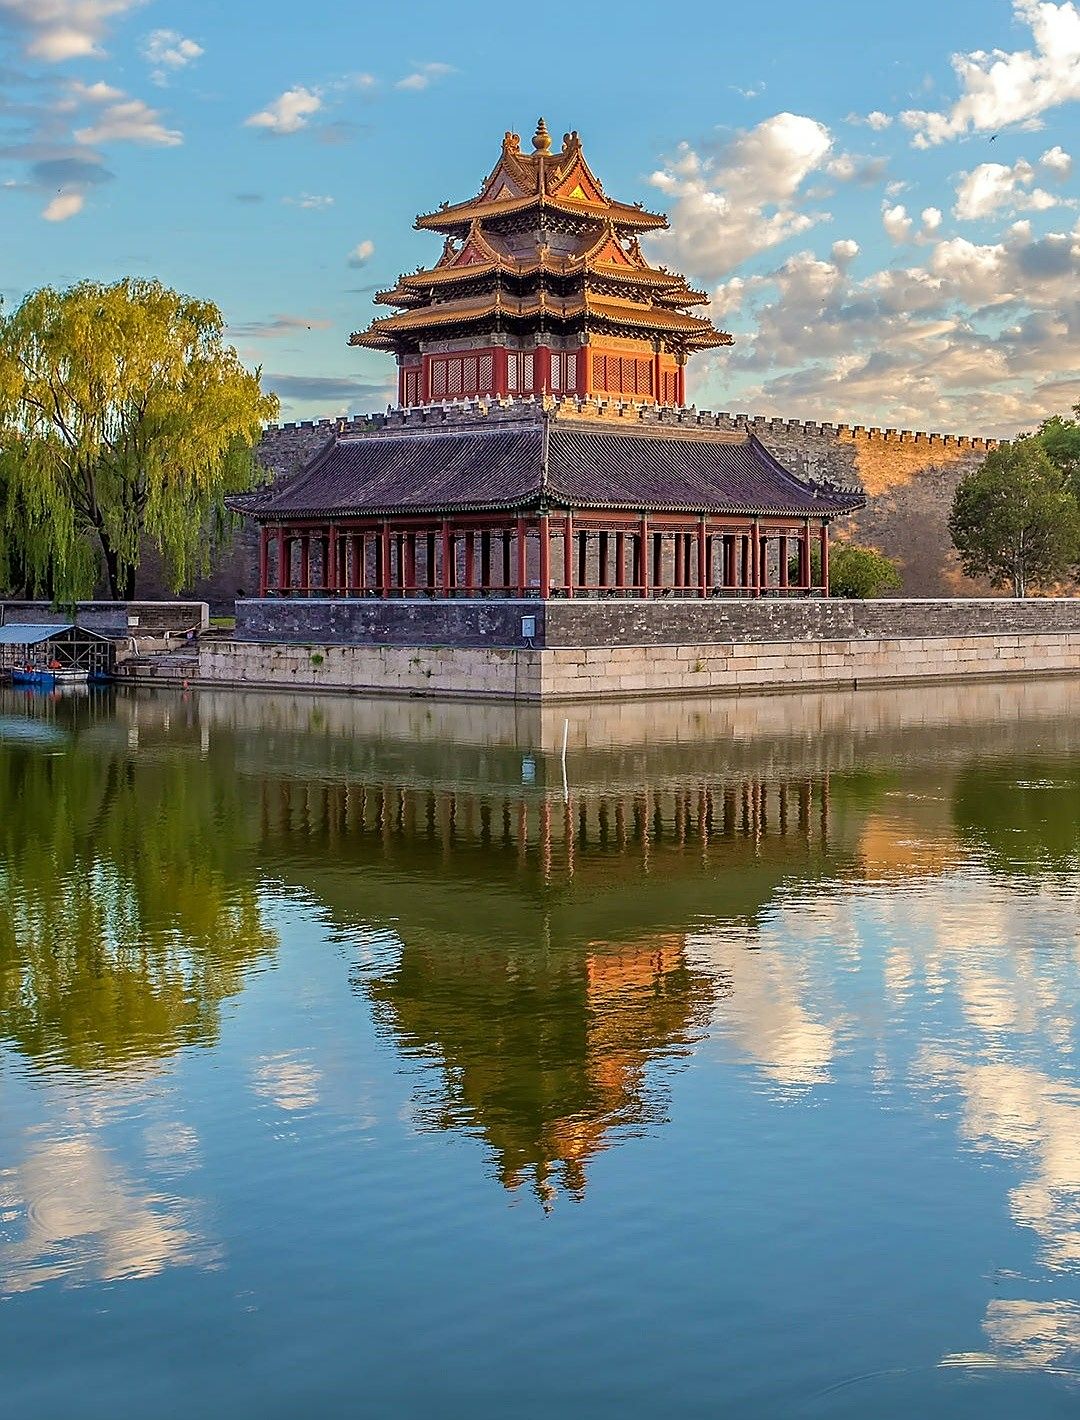 旅游途中,你可以看到具有中国建筑风格的古建筑,最大特点对称美